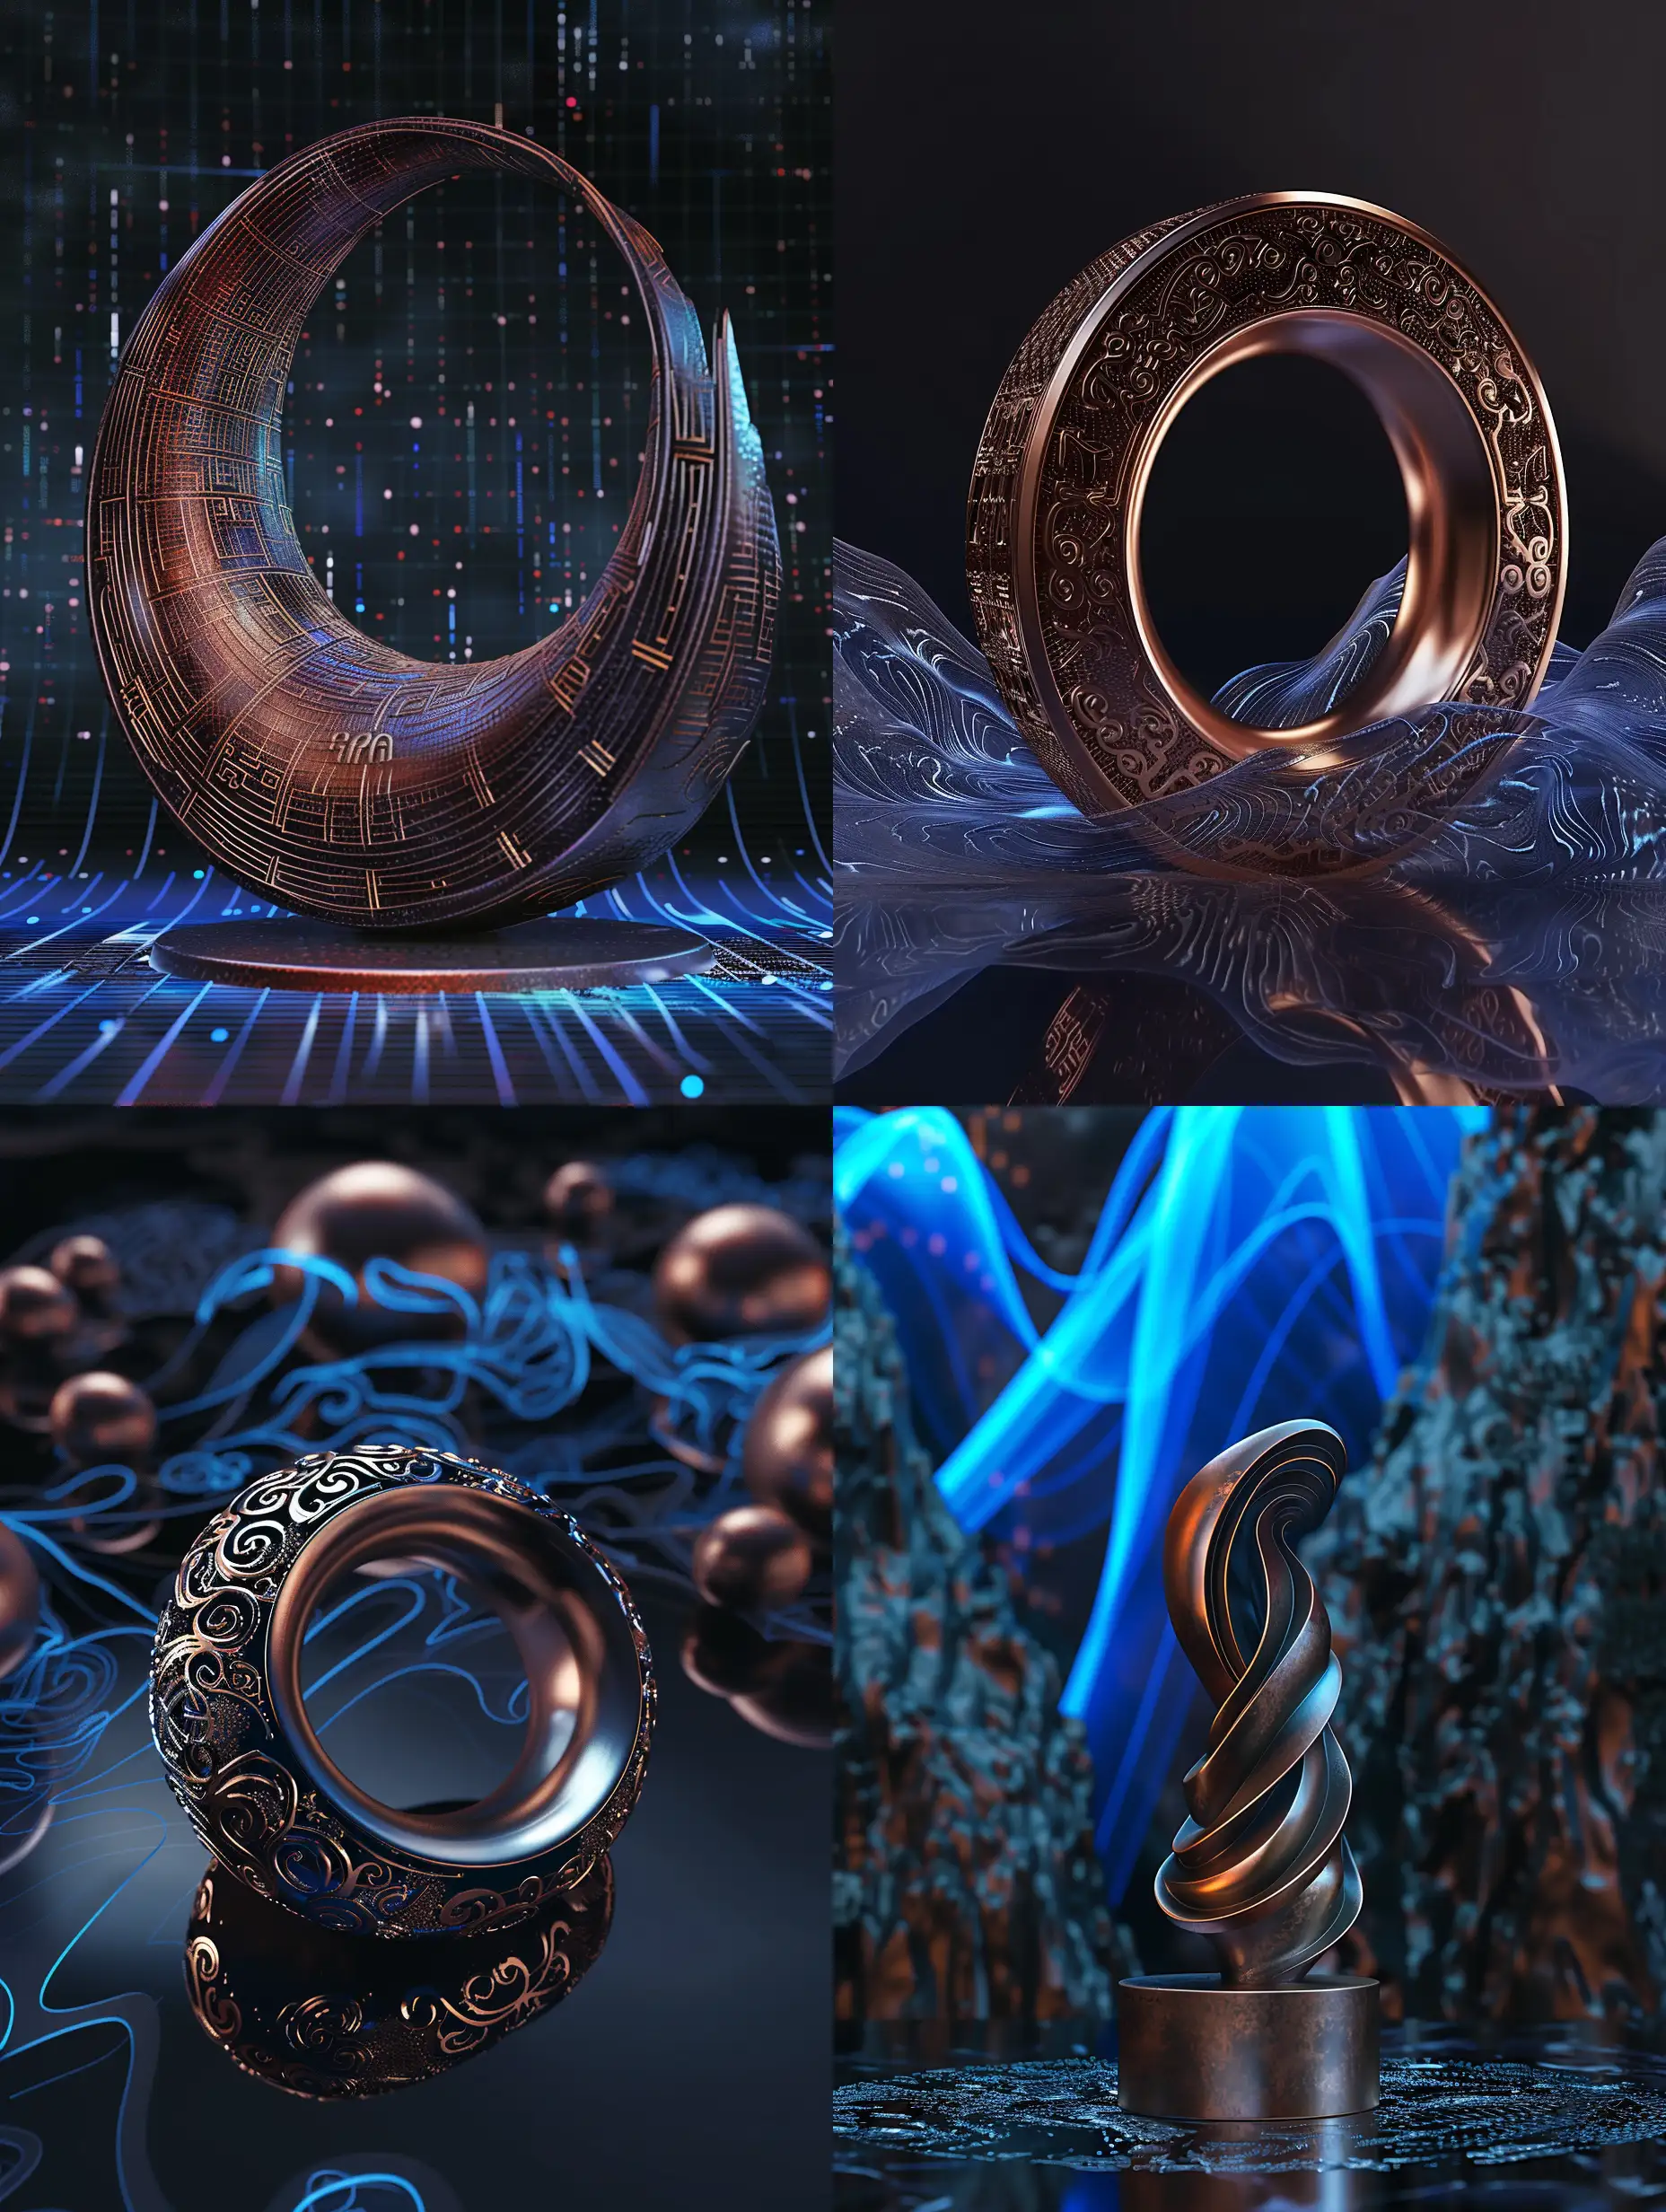 Dynamic-3D-Bronze-Ding-Sculpture-on-Modern-Tech-Background